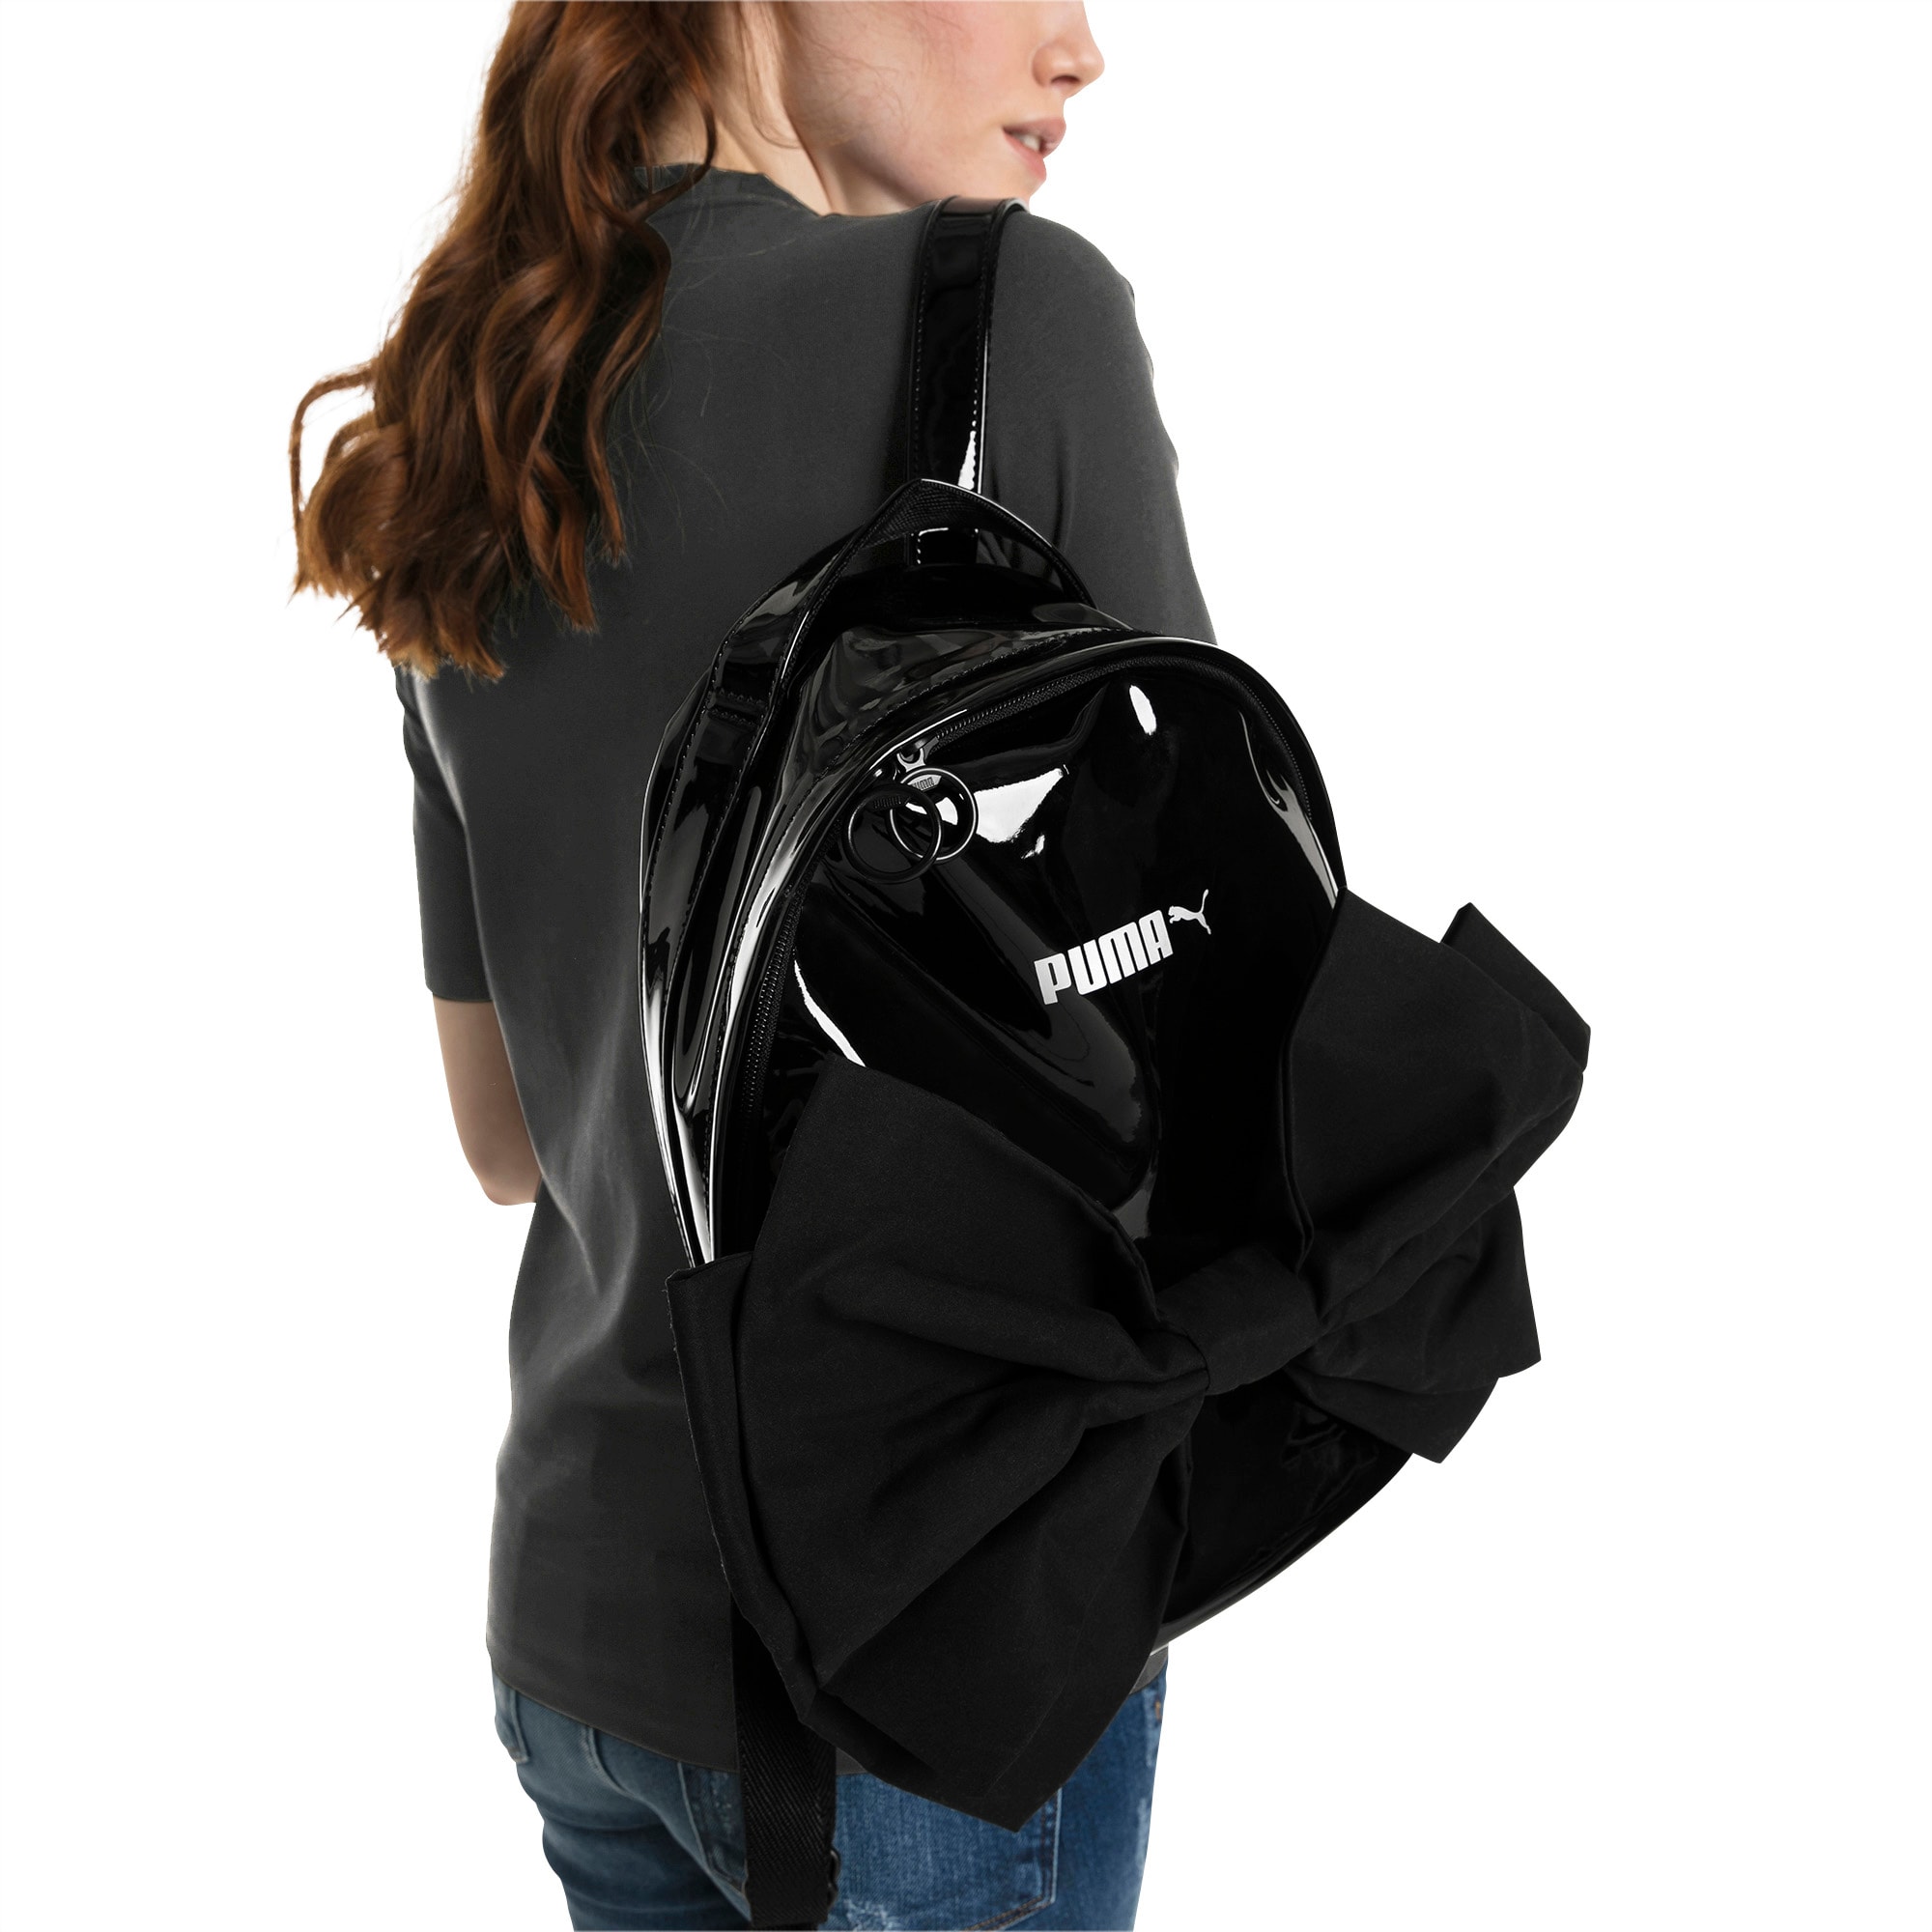 puma bow backpack black